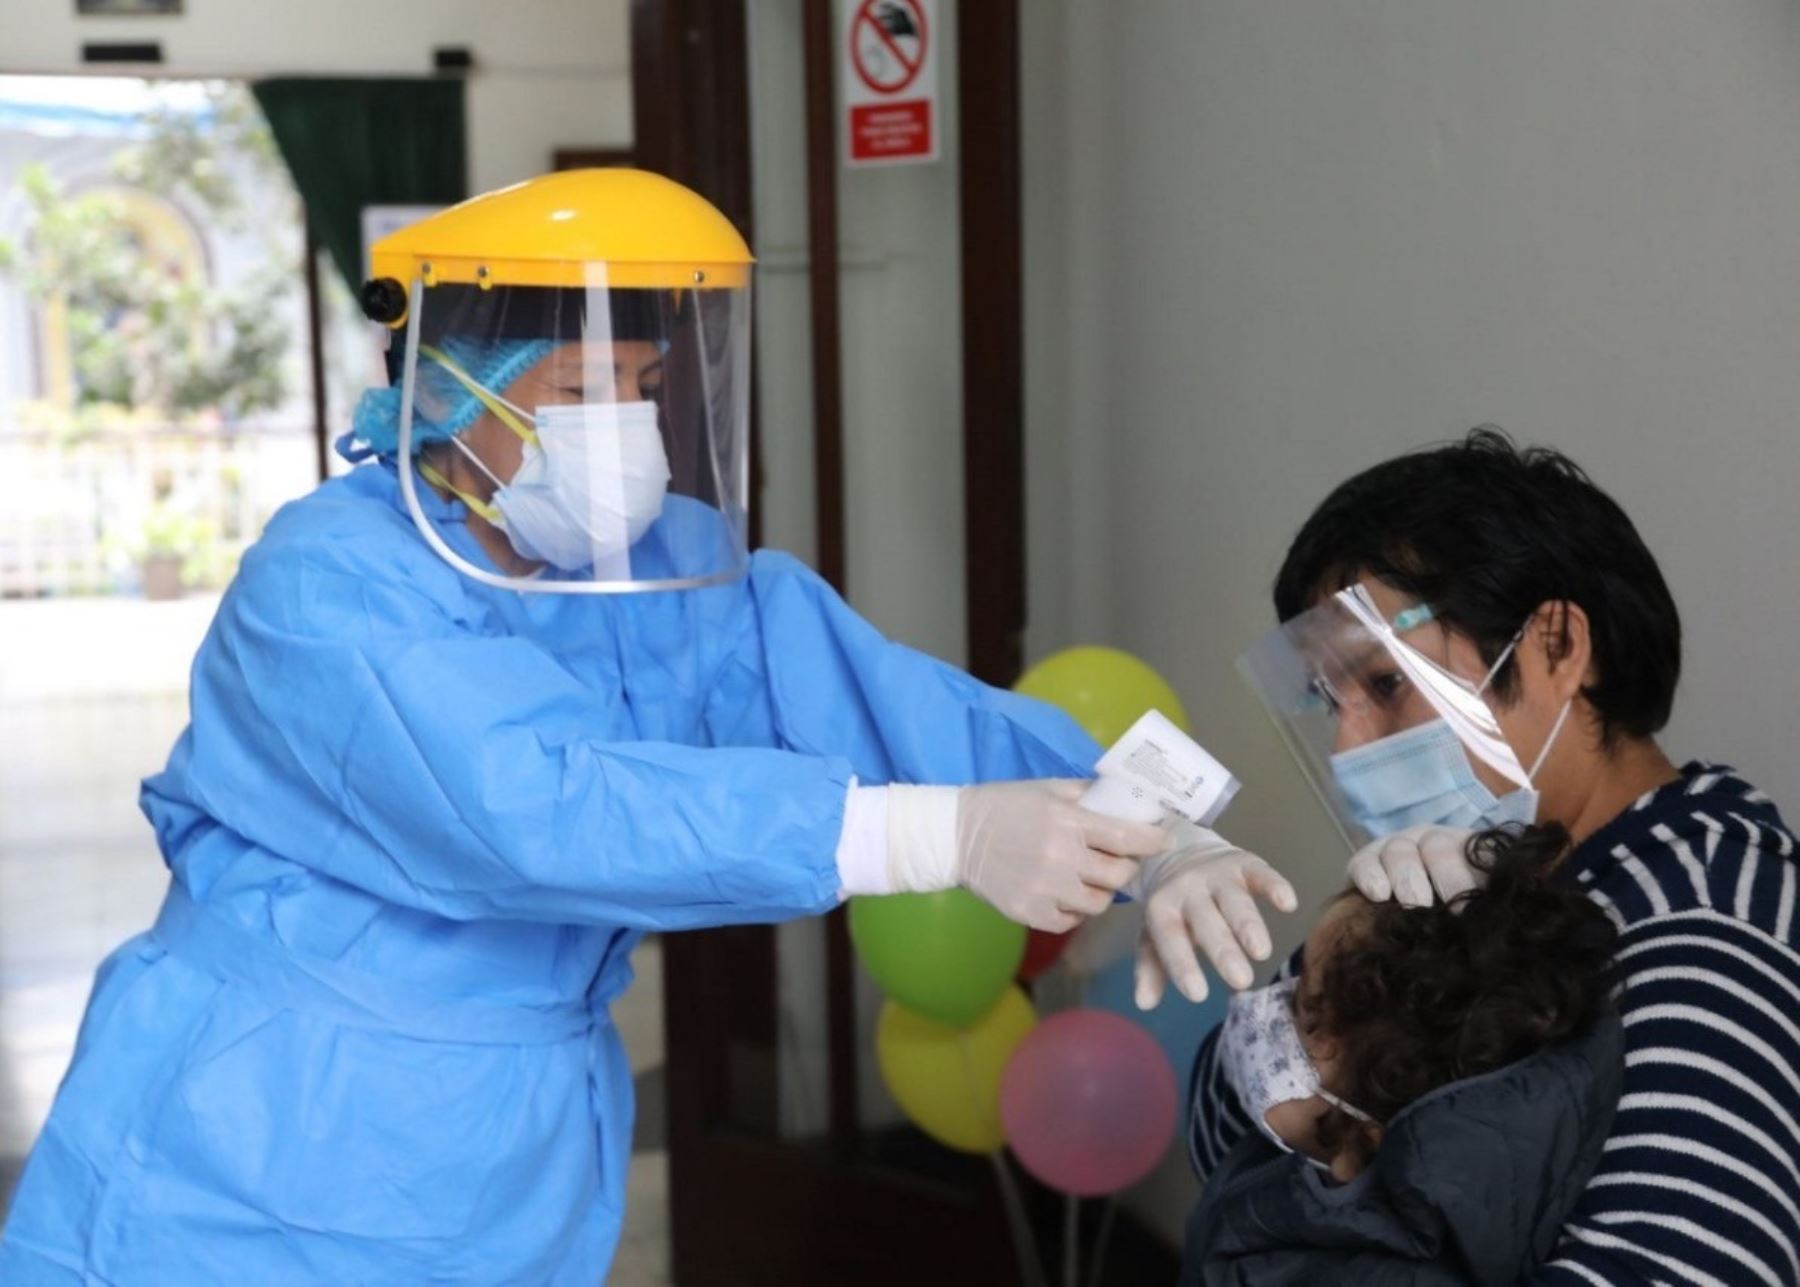 Las autoridades de salud de Puno prevén inmunizar a más de 17,000 niños contra la varicela para evitar un brote de la enfermedad. ANDINA/Difusión